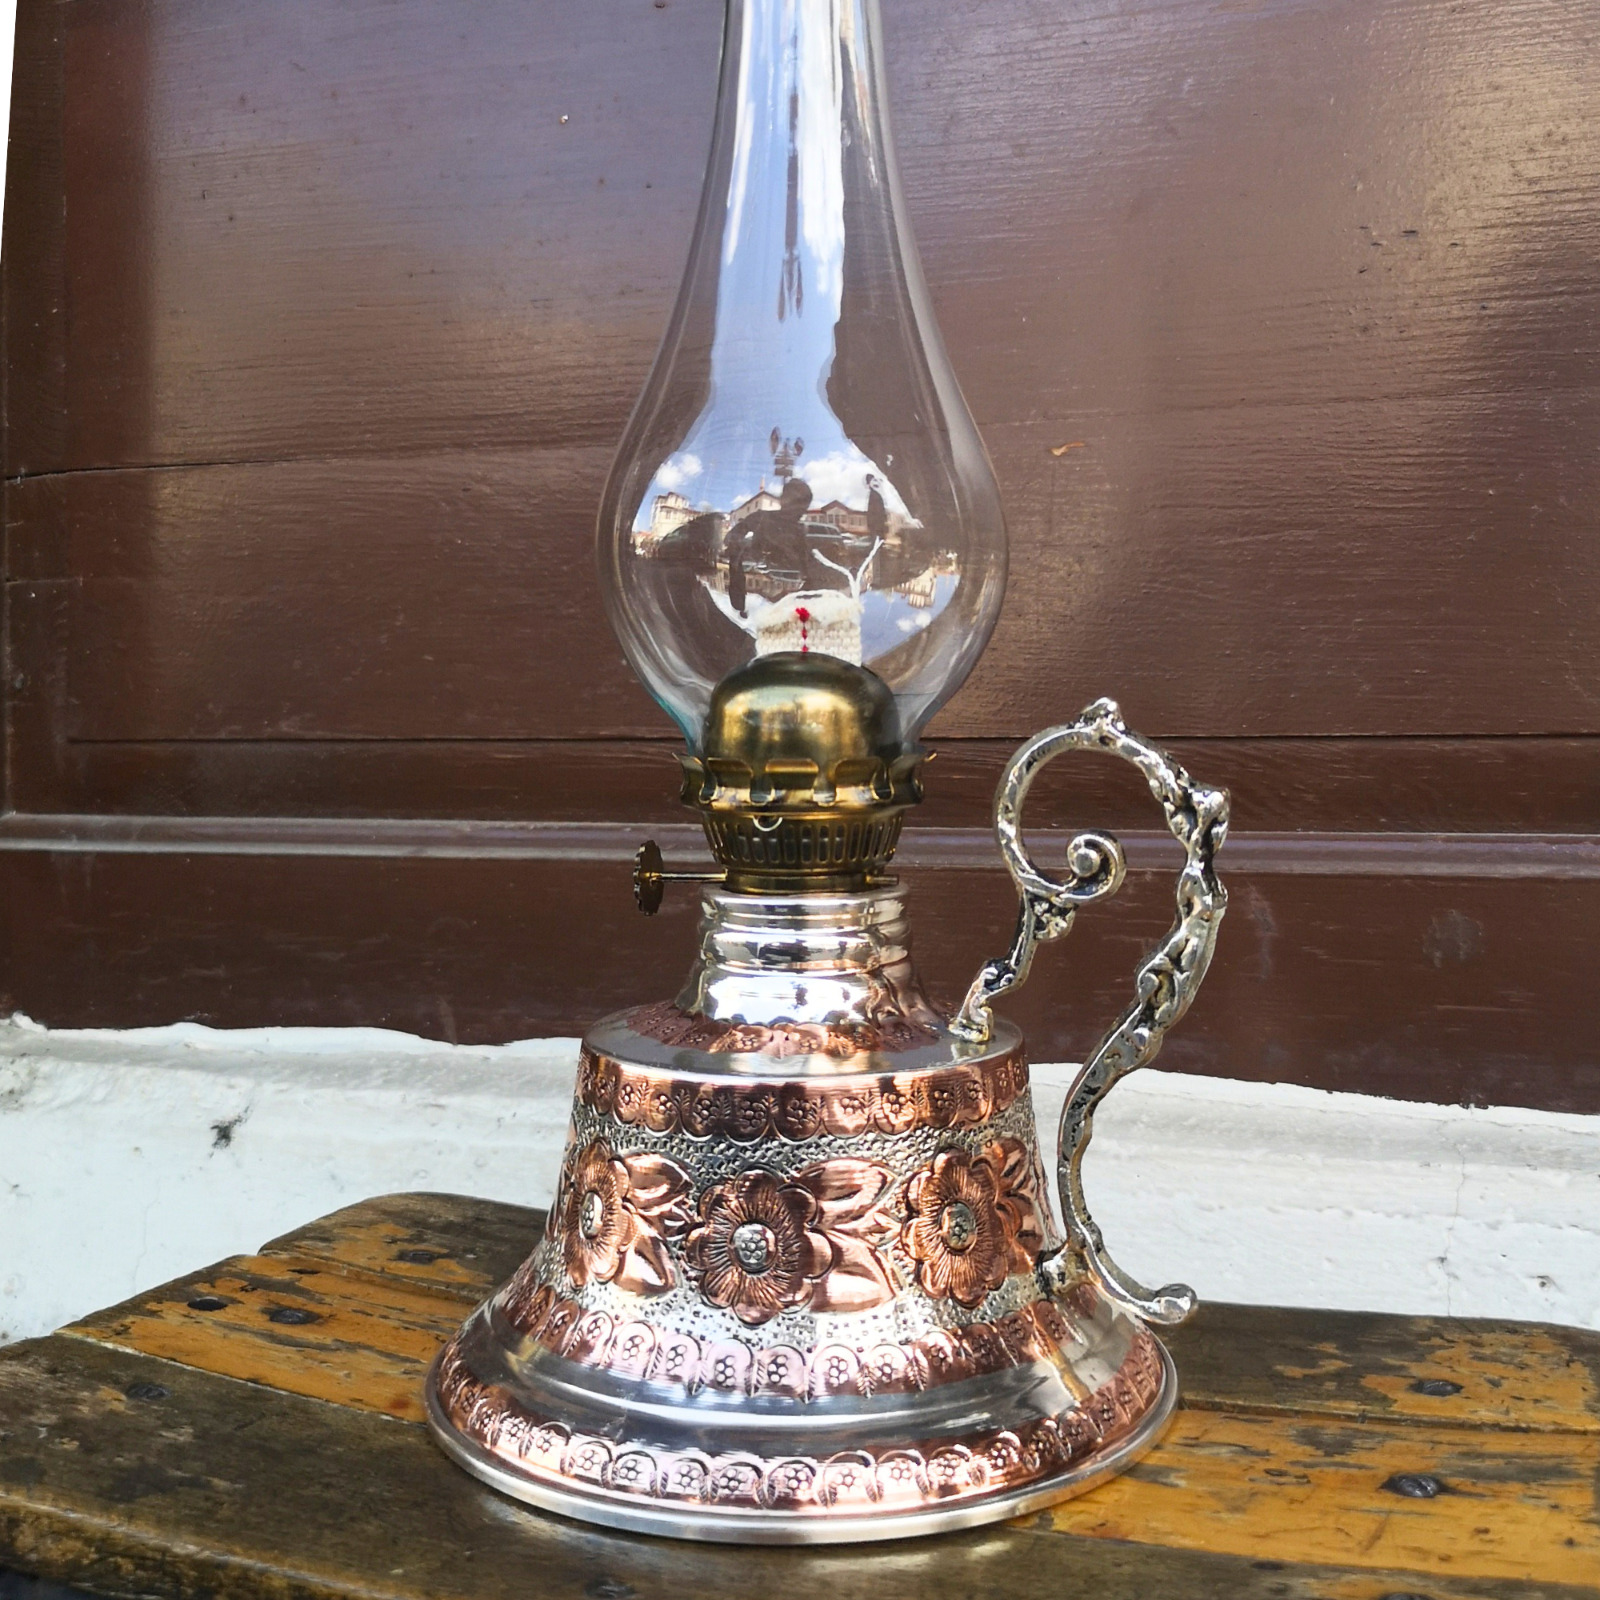 Copper Oil Lamp 700 ml capacity Handmade Kerosene Vintage Style Table Lamp